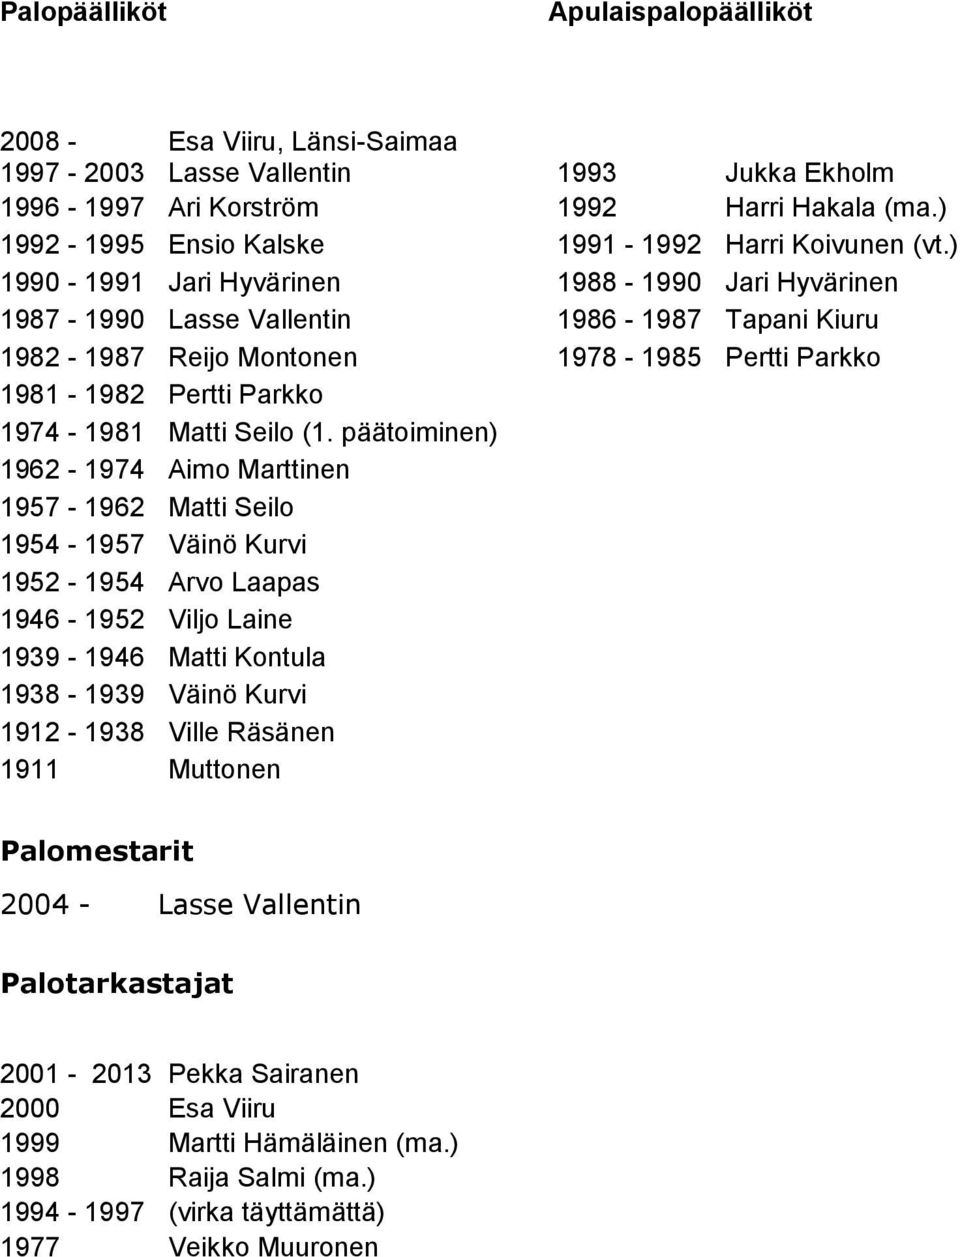 ) 1990-1991 Jari Hyvärinen 1988-1990 Jari Hyvärinen 1987-1990 Lasse Vallentin 1986-1987 Tapani Kiuru 1982-1987 Reijo Montonen 1978-1985 Pertti Parkko 1981-1982 Pertti Parkko 1974-1981 Matti Seilo (1.